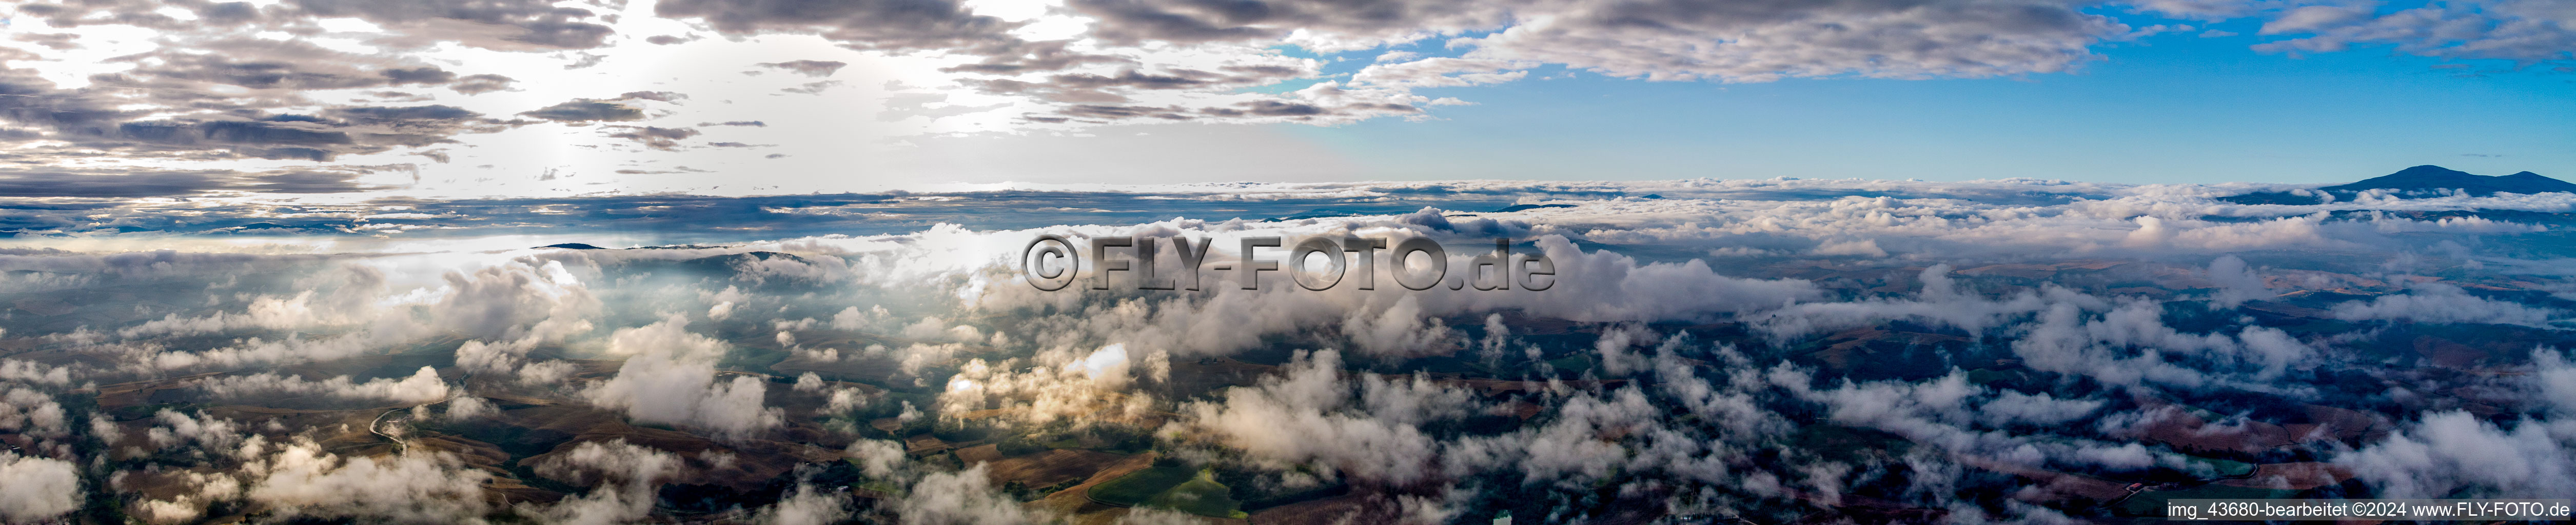 Panorama - Perspektive mit Wolken der Gipfel in der Felsen- und Berglandschaft in Montepulciano in Toskana im Bundesland Toscana, Italien